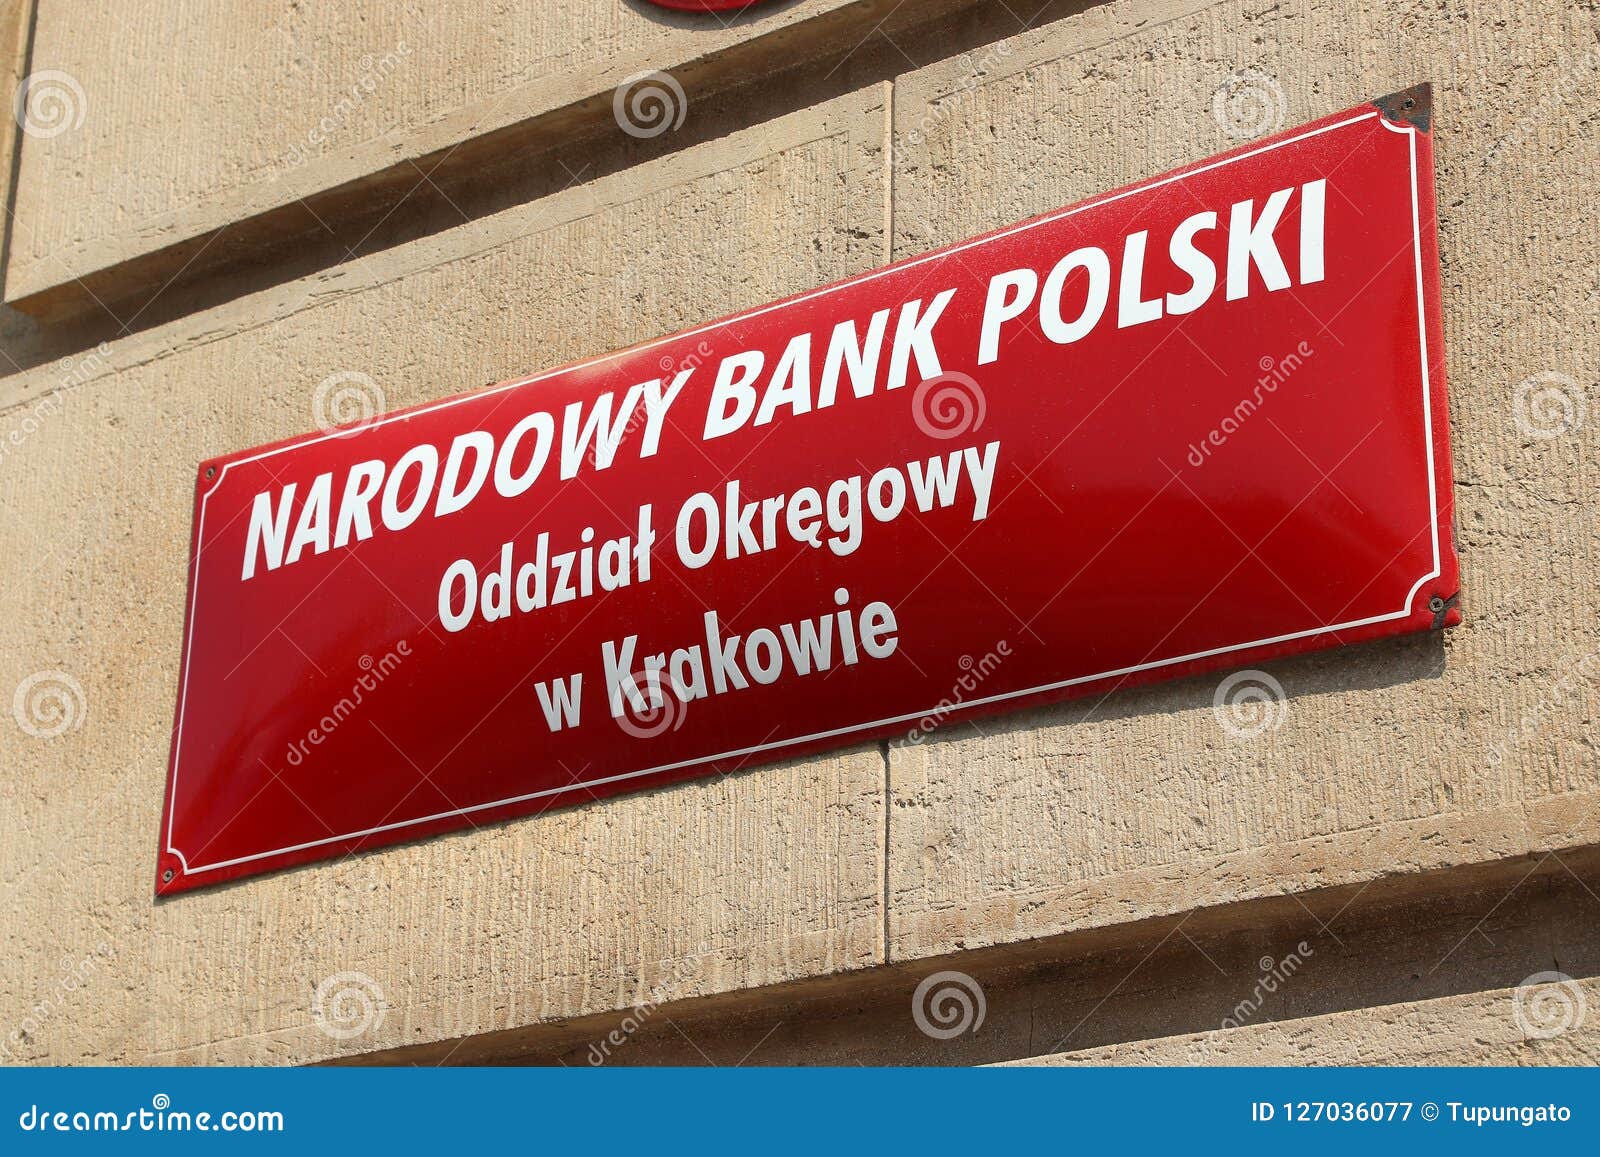 narodowy bank polski nbp